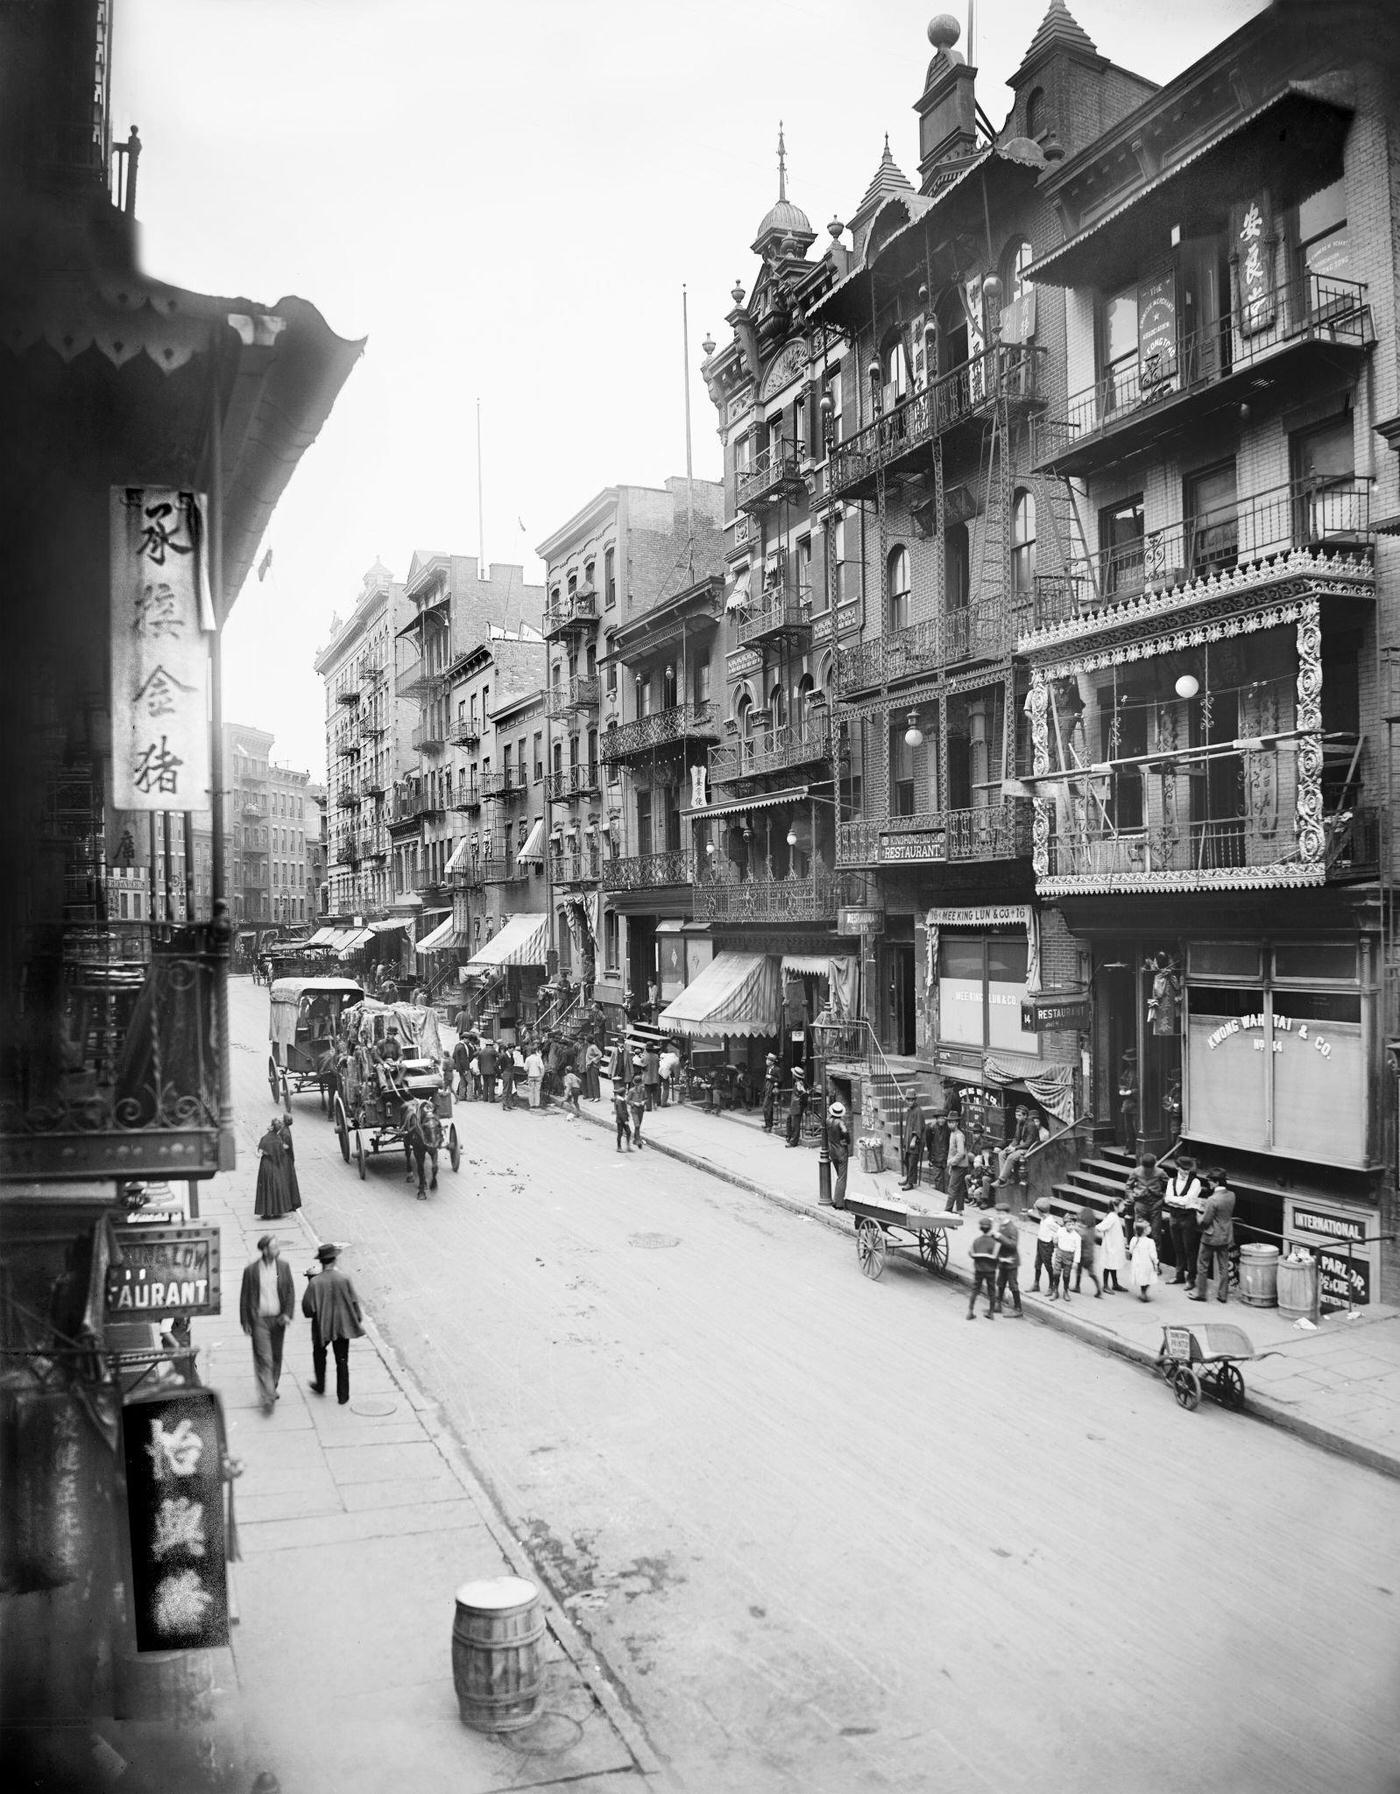 Mott Street, Chinatown, New York City, 1900